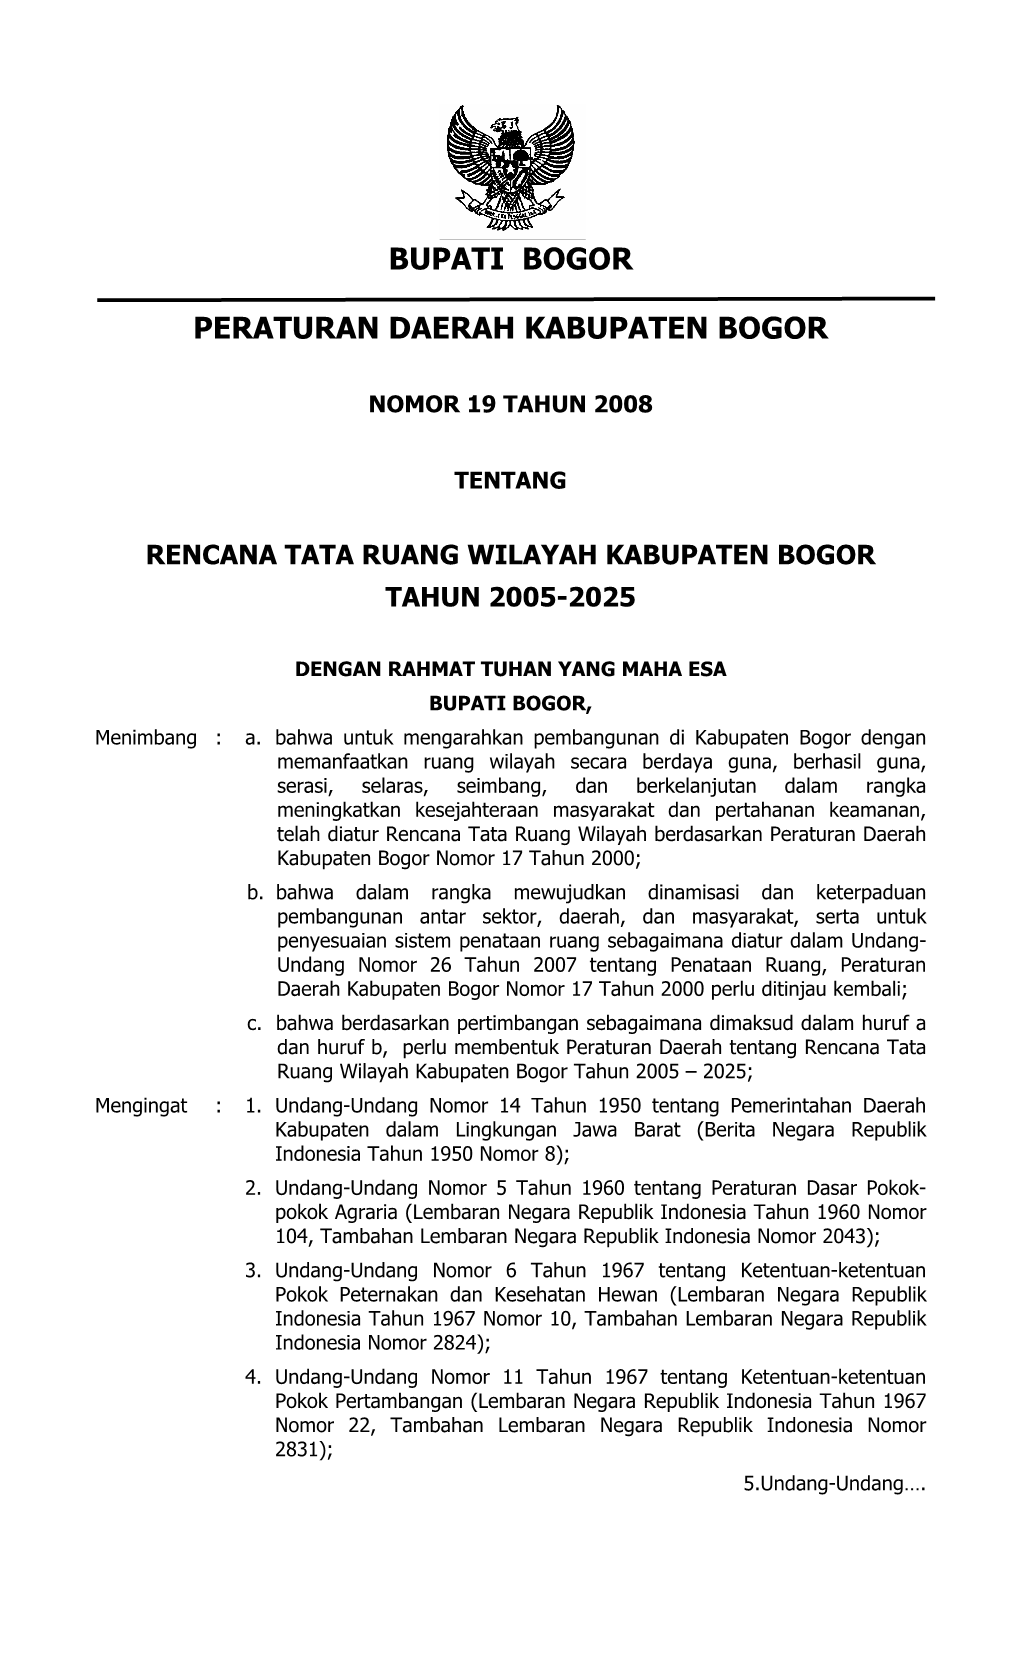 Perda RTRW Kabupaten Bogor